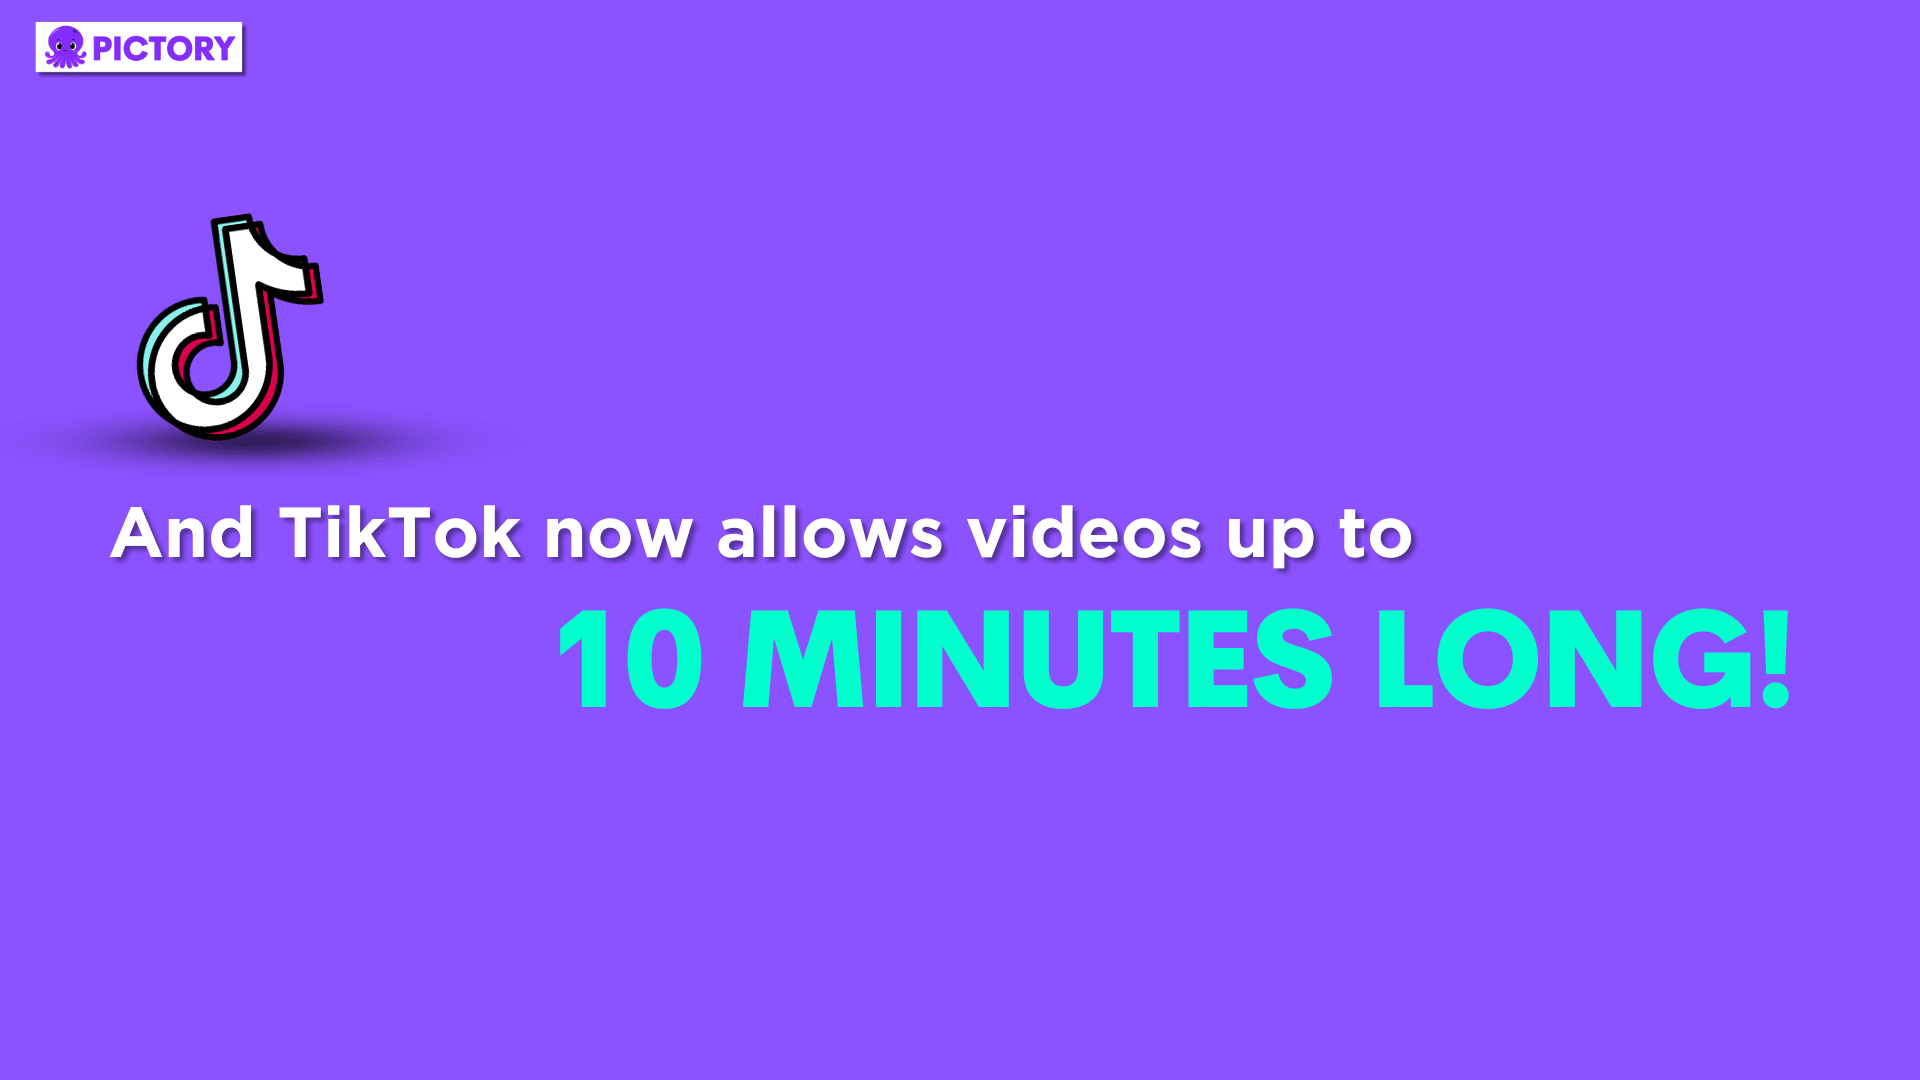 TikTok statistic, infographic, TikTok now allows videos up to 10 minutes long!